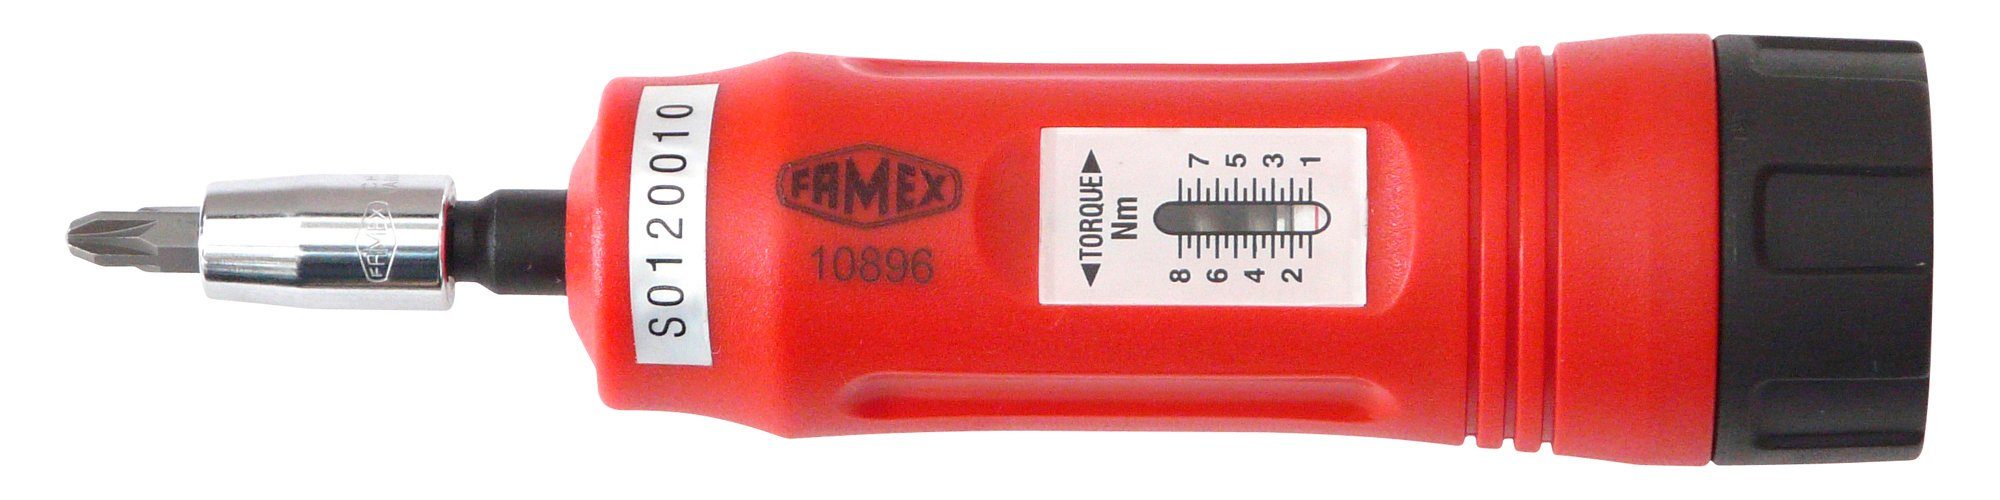 FAMEX Drehmomentschlüssel 1-8 10896, Nm